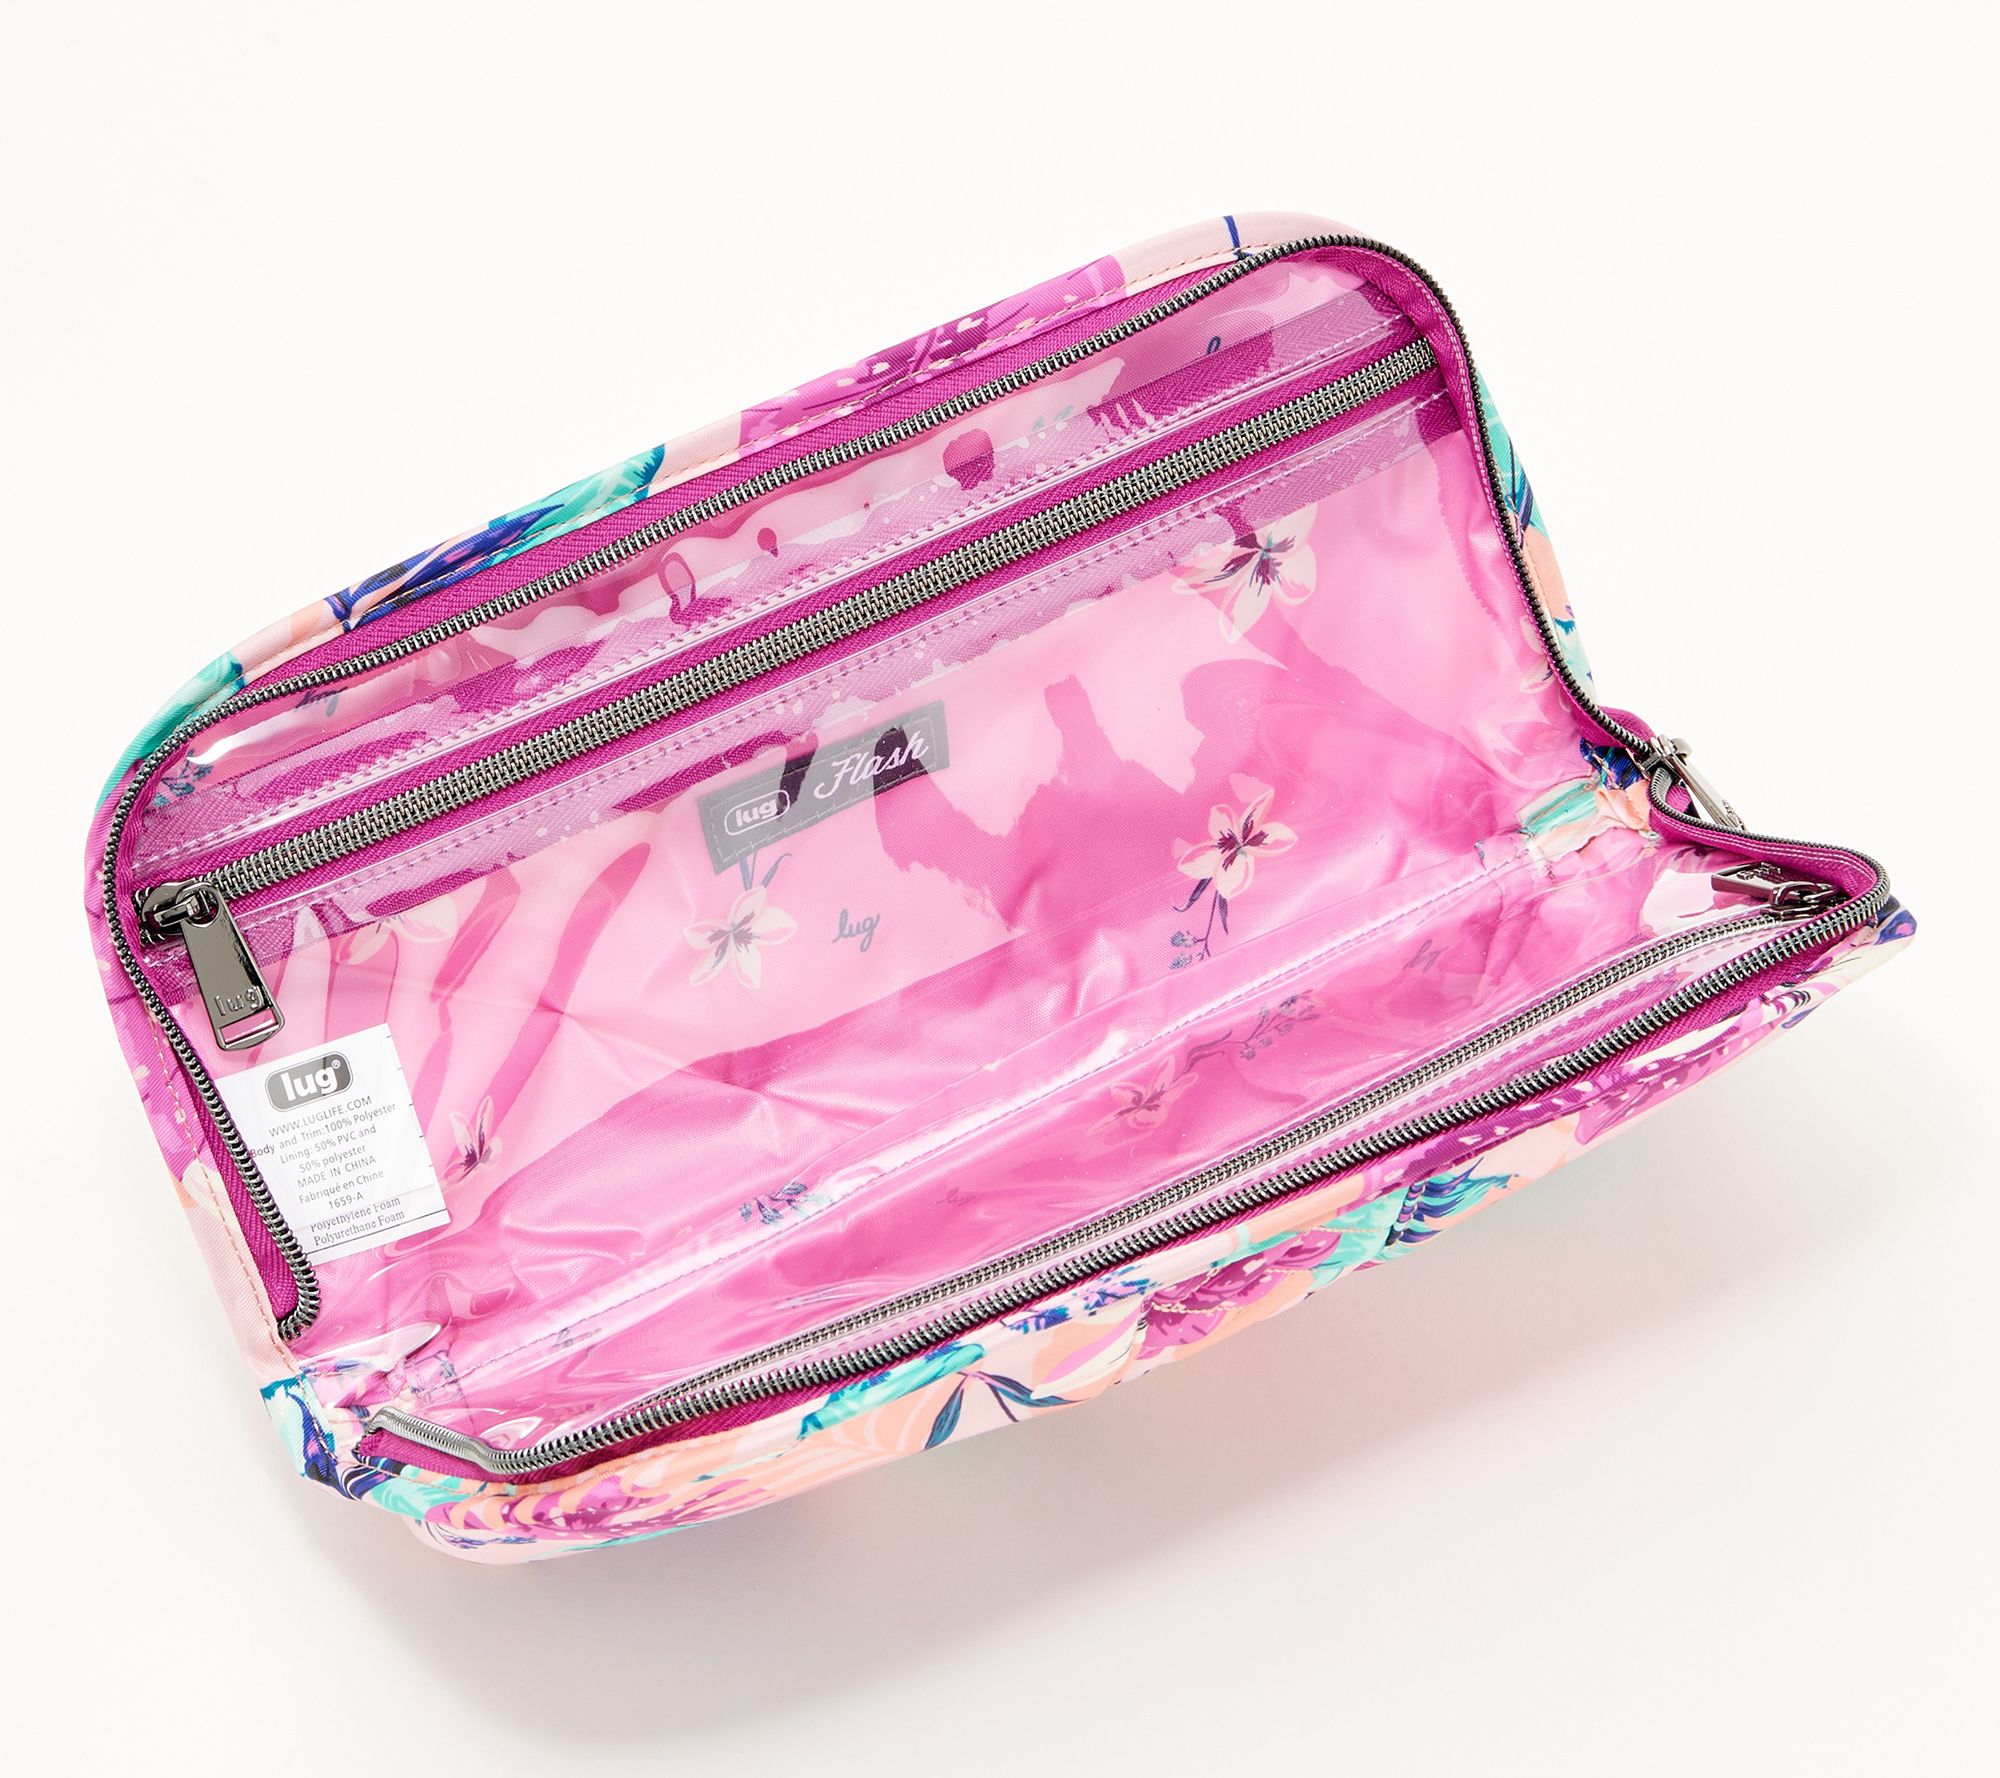 Kimmy Kouture Beauty USB Charged LED Makeup Bag!